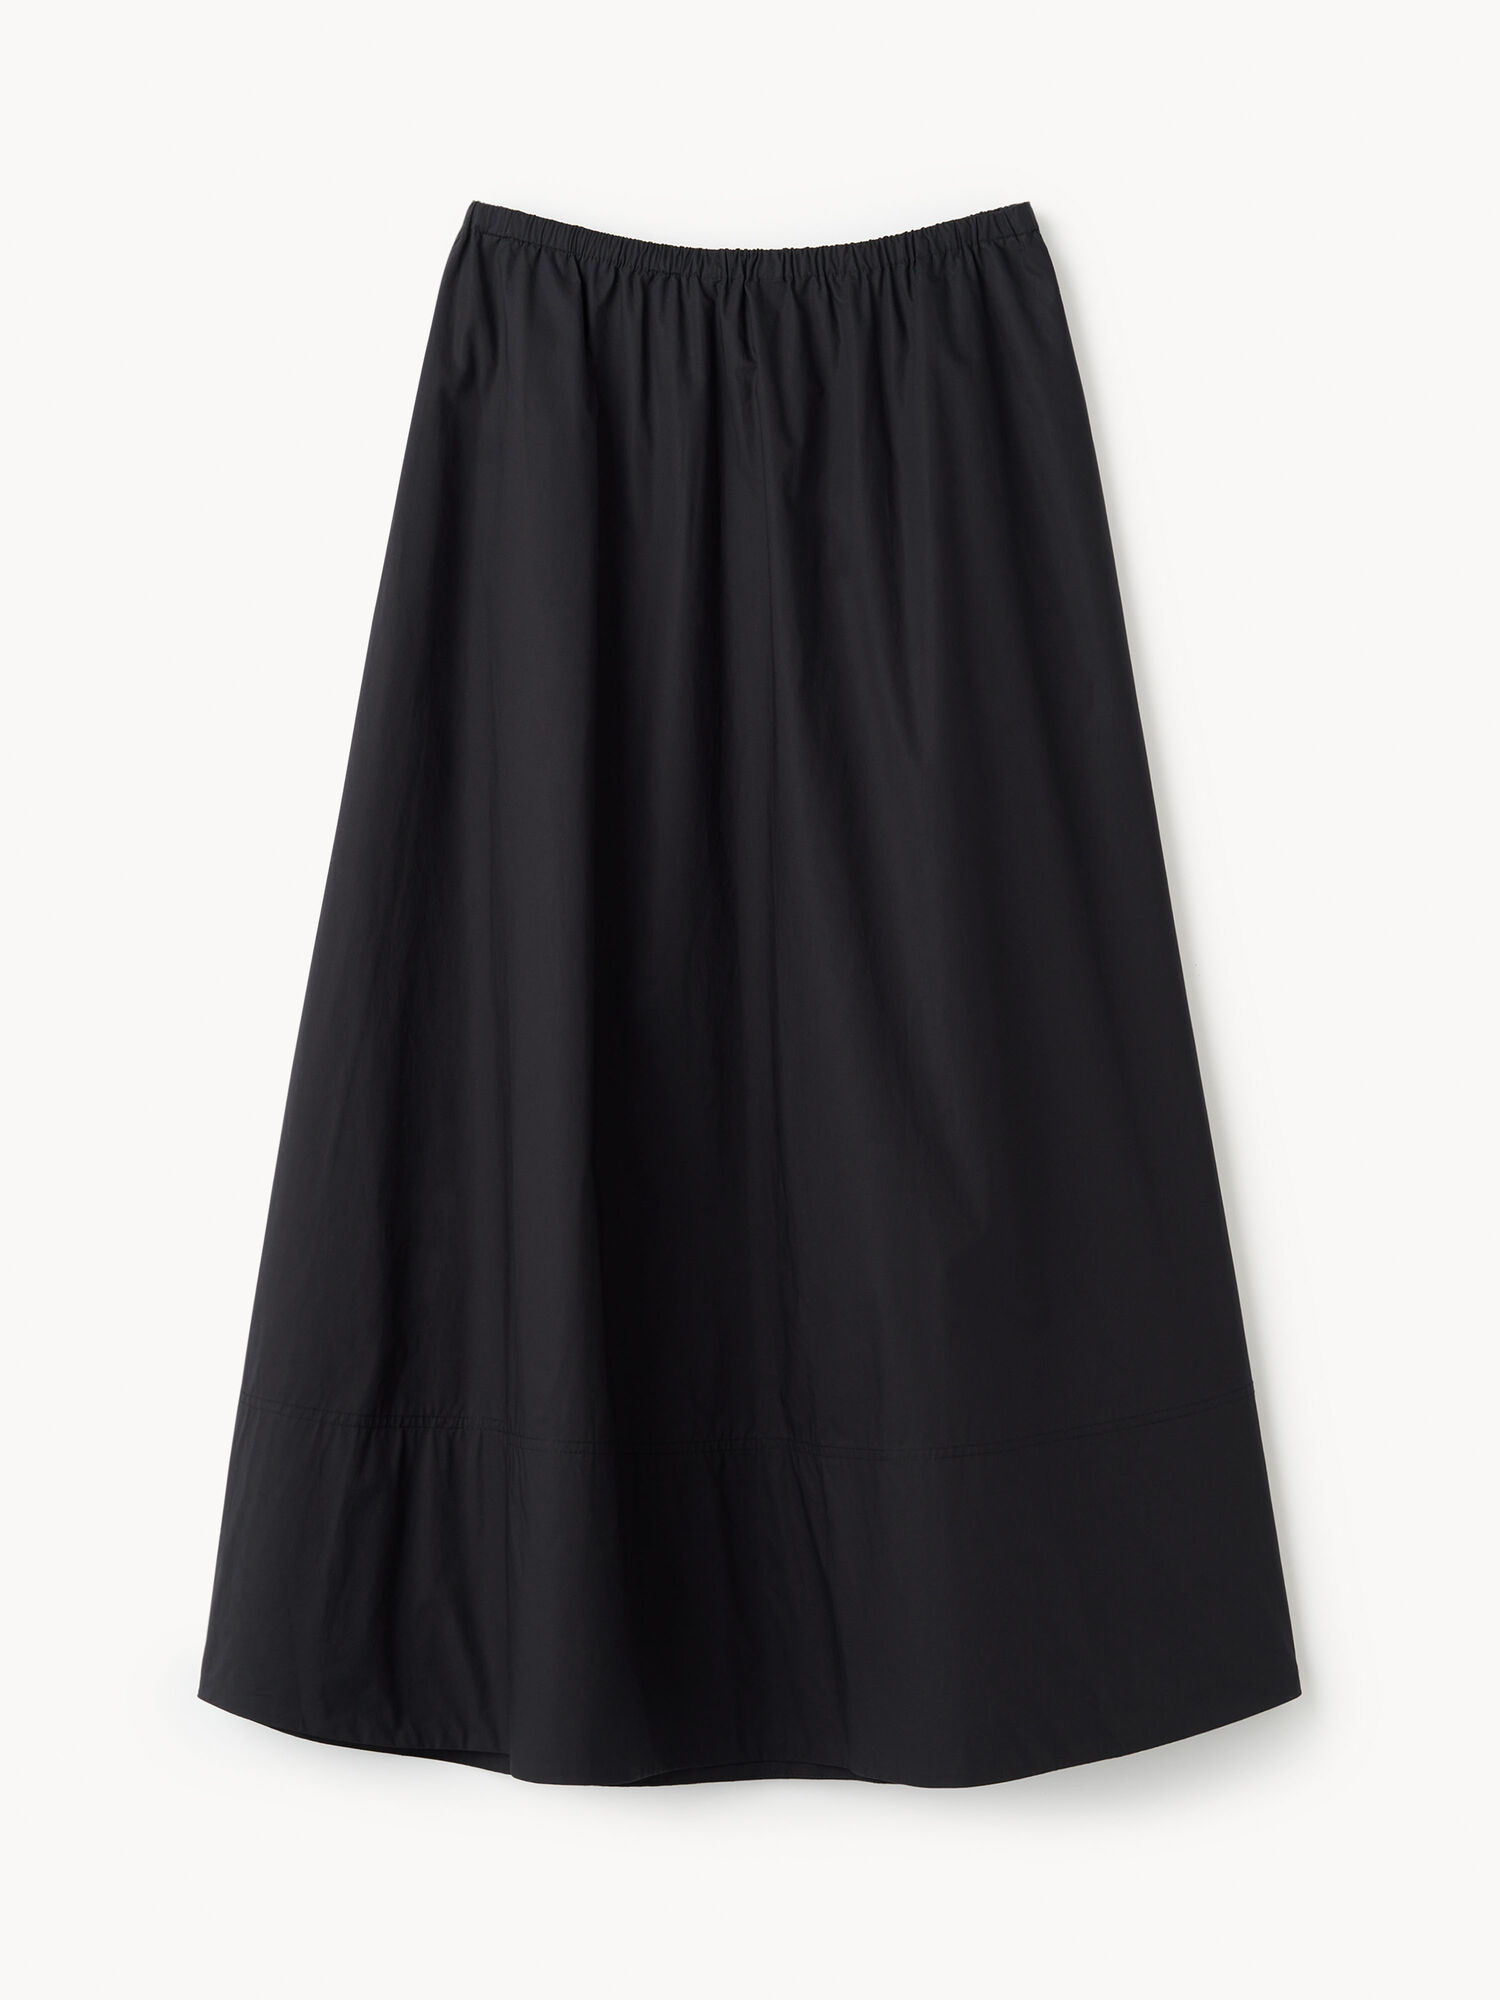 Pheobes organic cotton skirt - Buy Skirts online | By Malene Birger